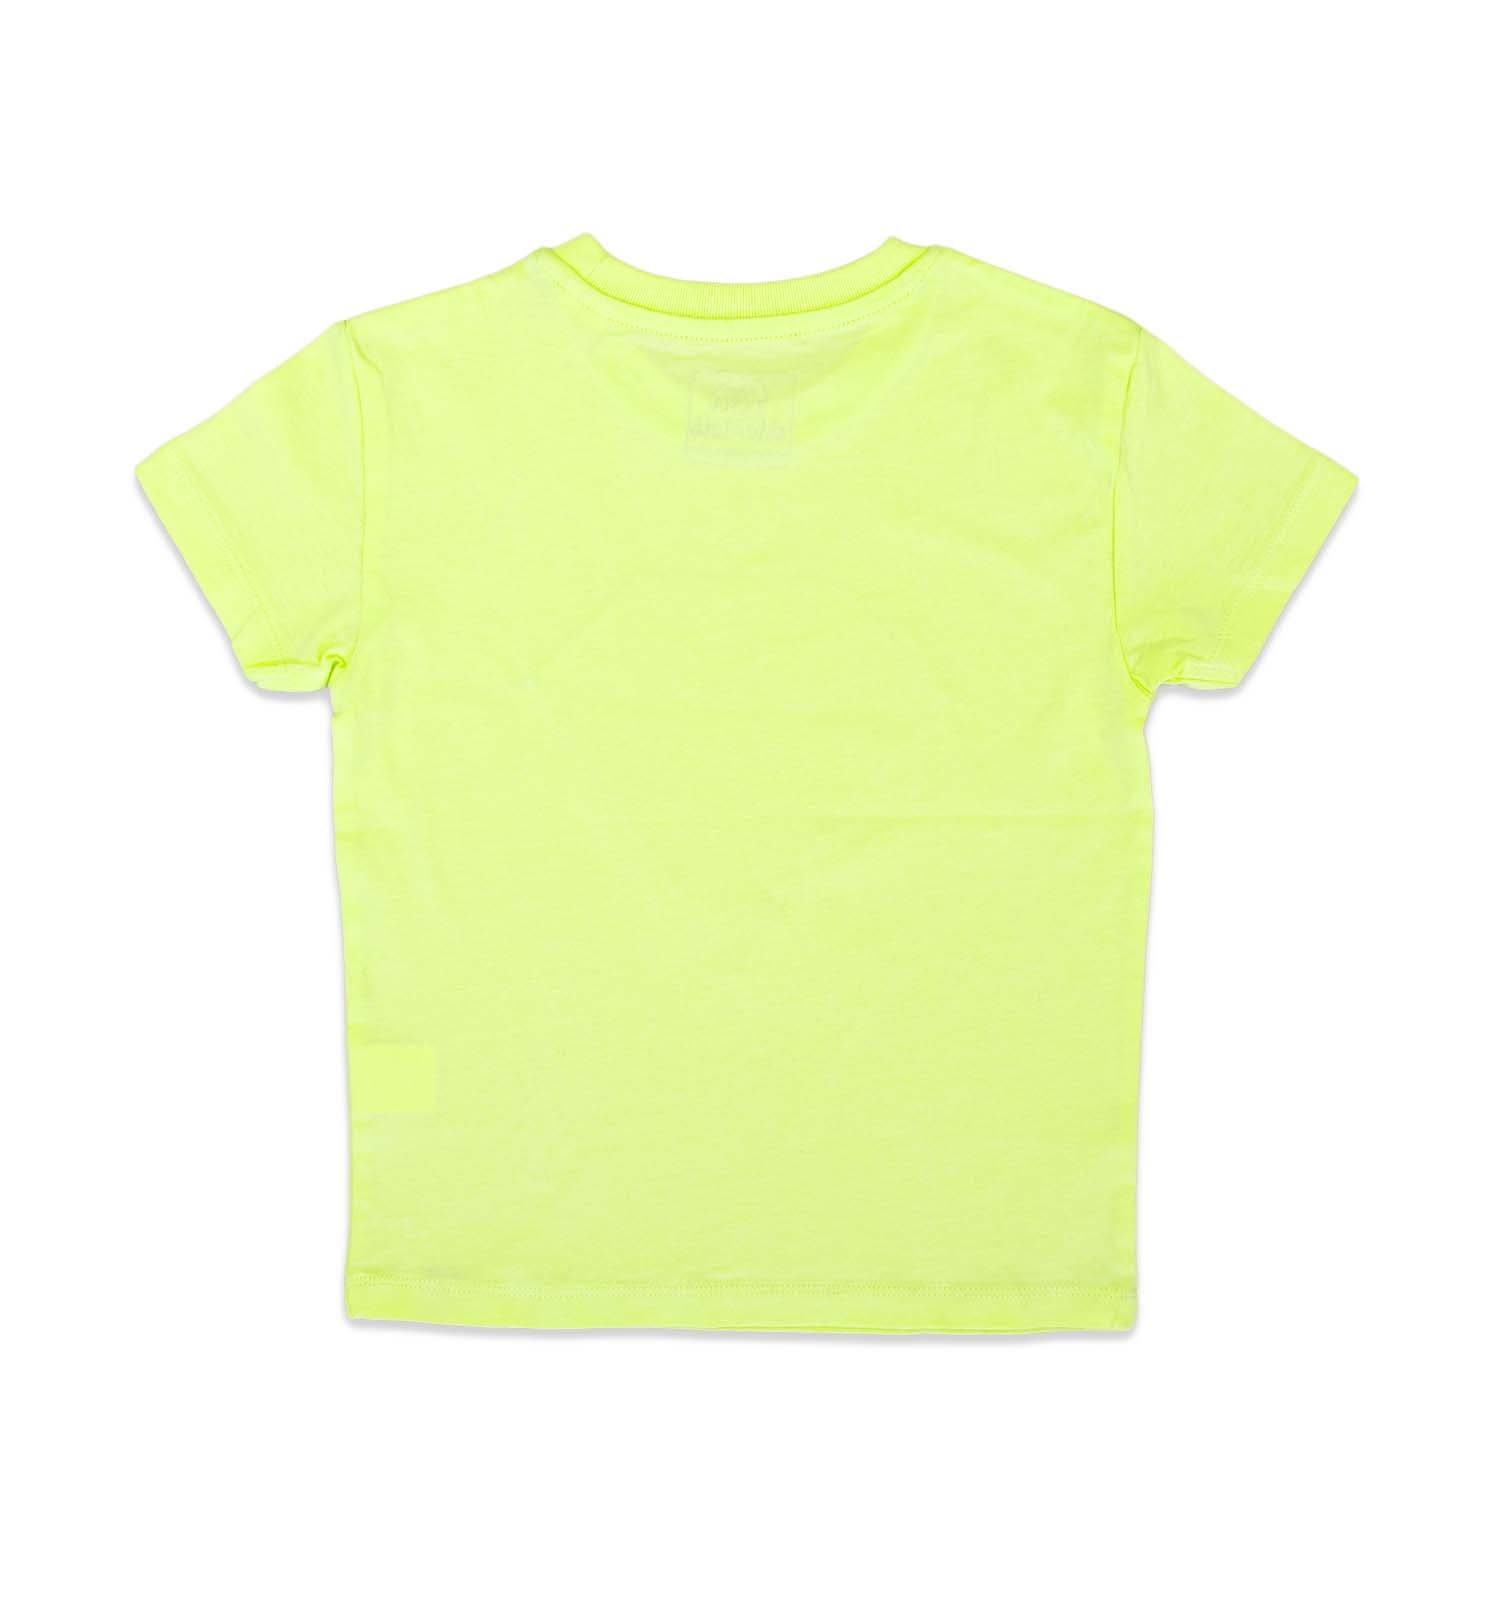 T-Shirt mit Superhelden Logo in Lime | sticklett Online Store.